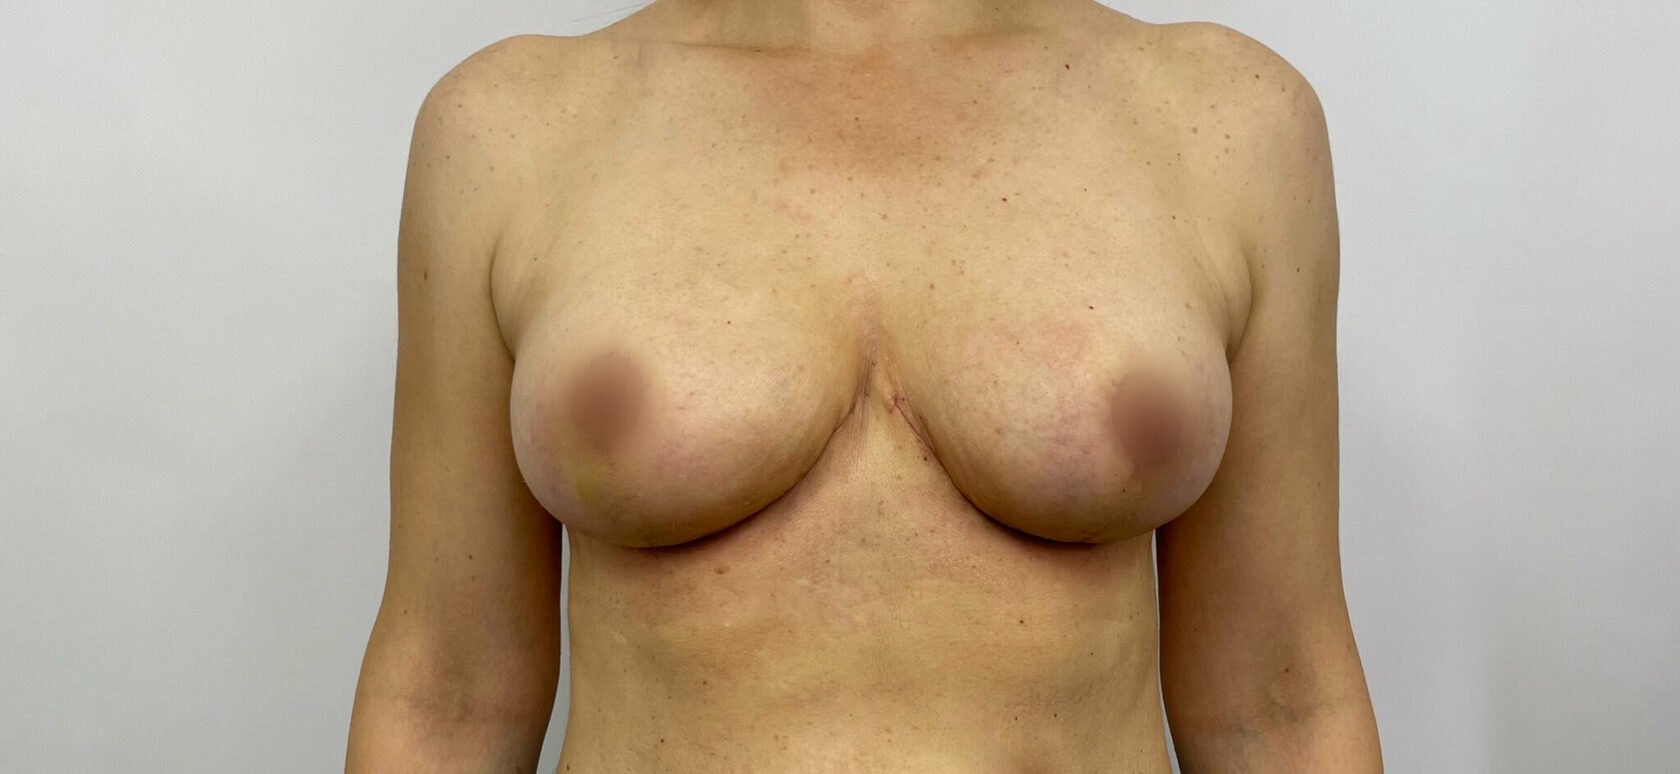 перед менструацией увеличилась одна грудь фото 19